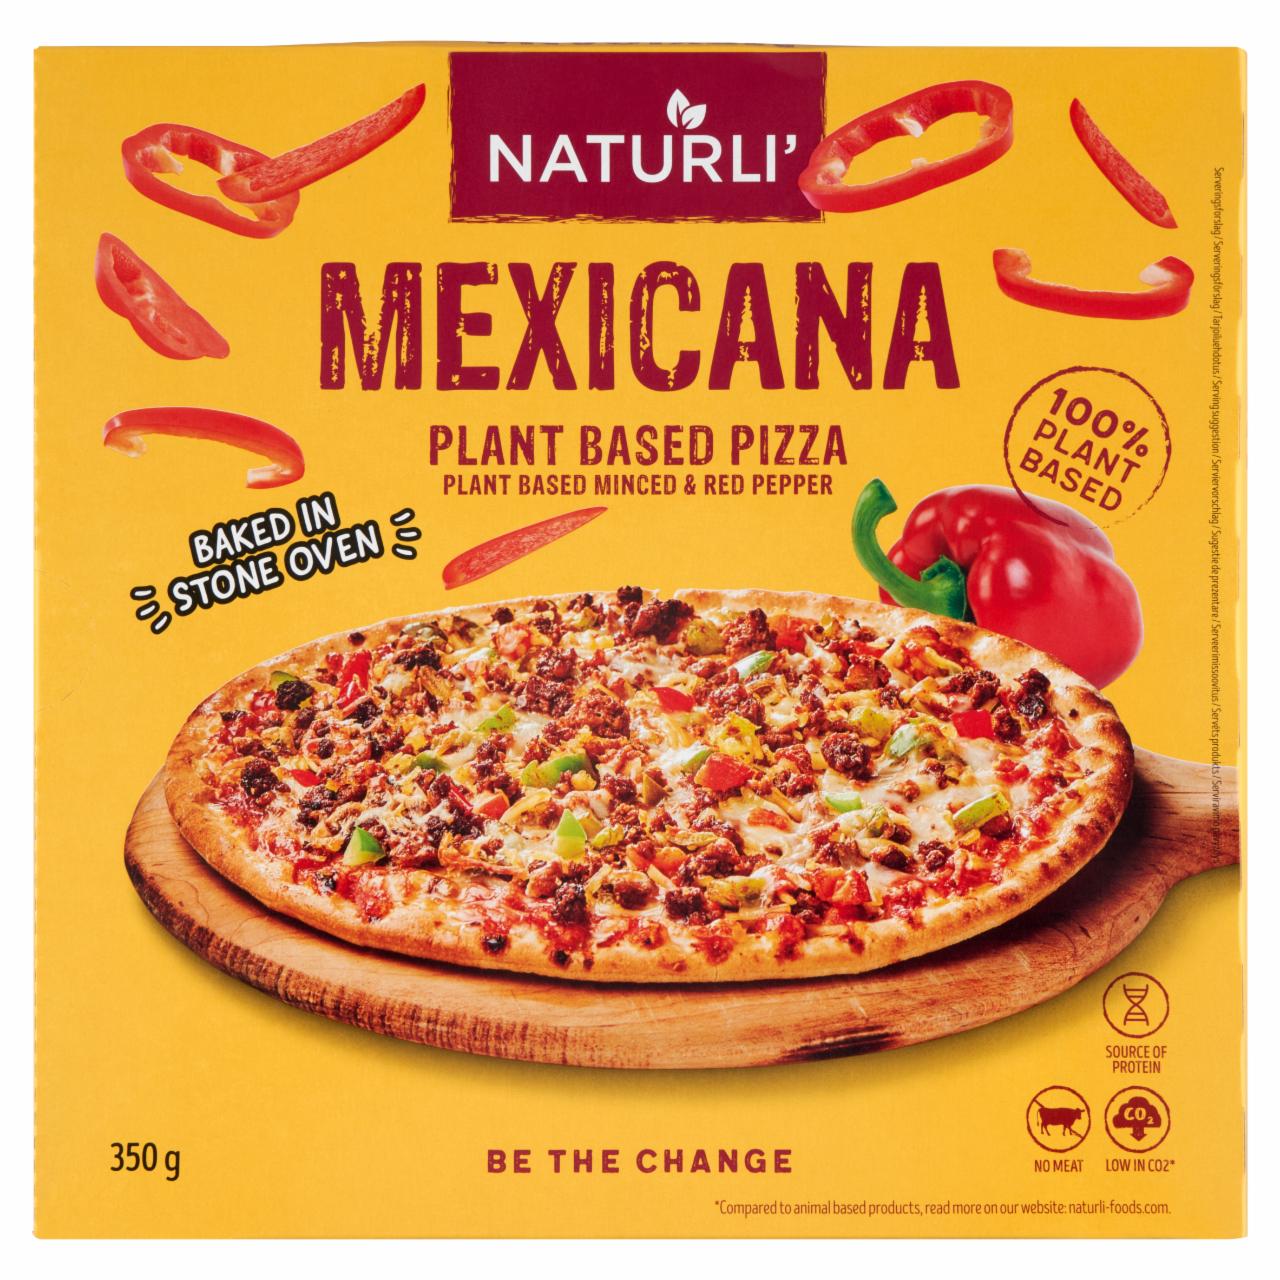 Képek - Naturli' Mexicana gyorsfagyasztott növényi alapú pizza mexikói ízesítéssel 350 g